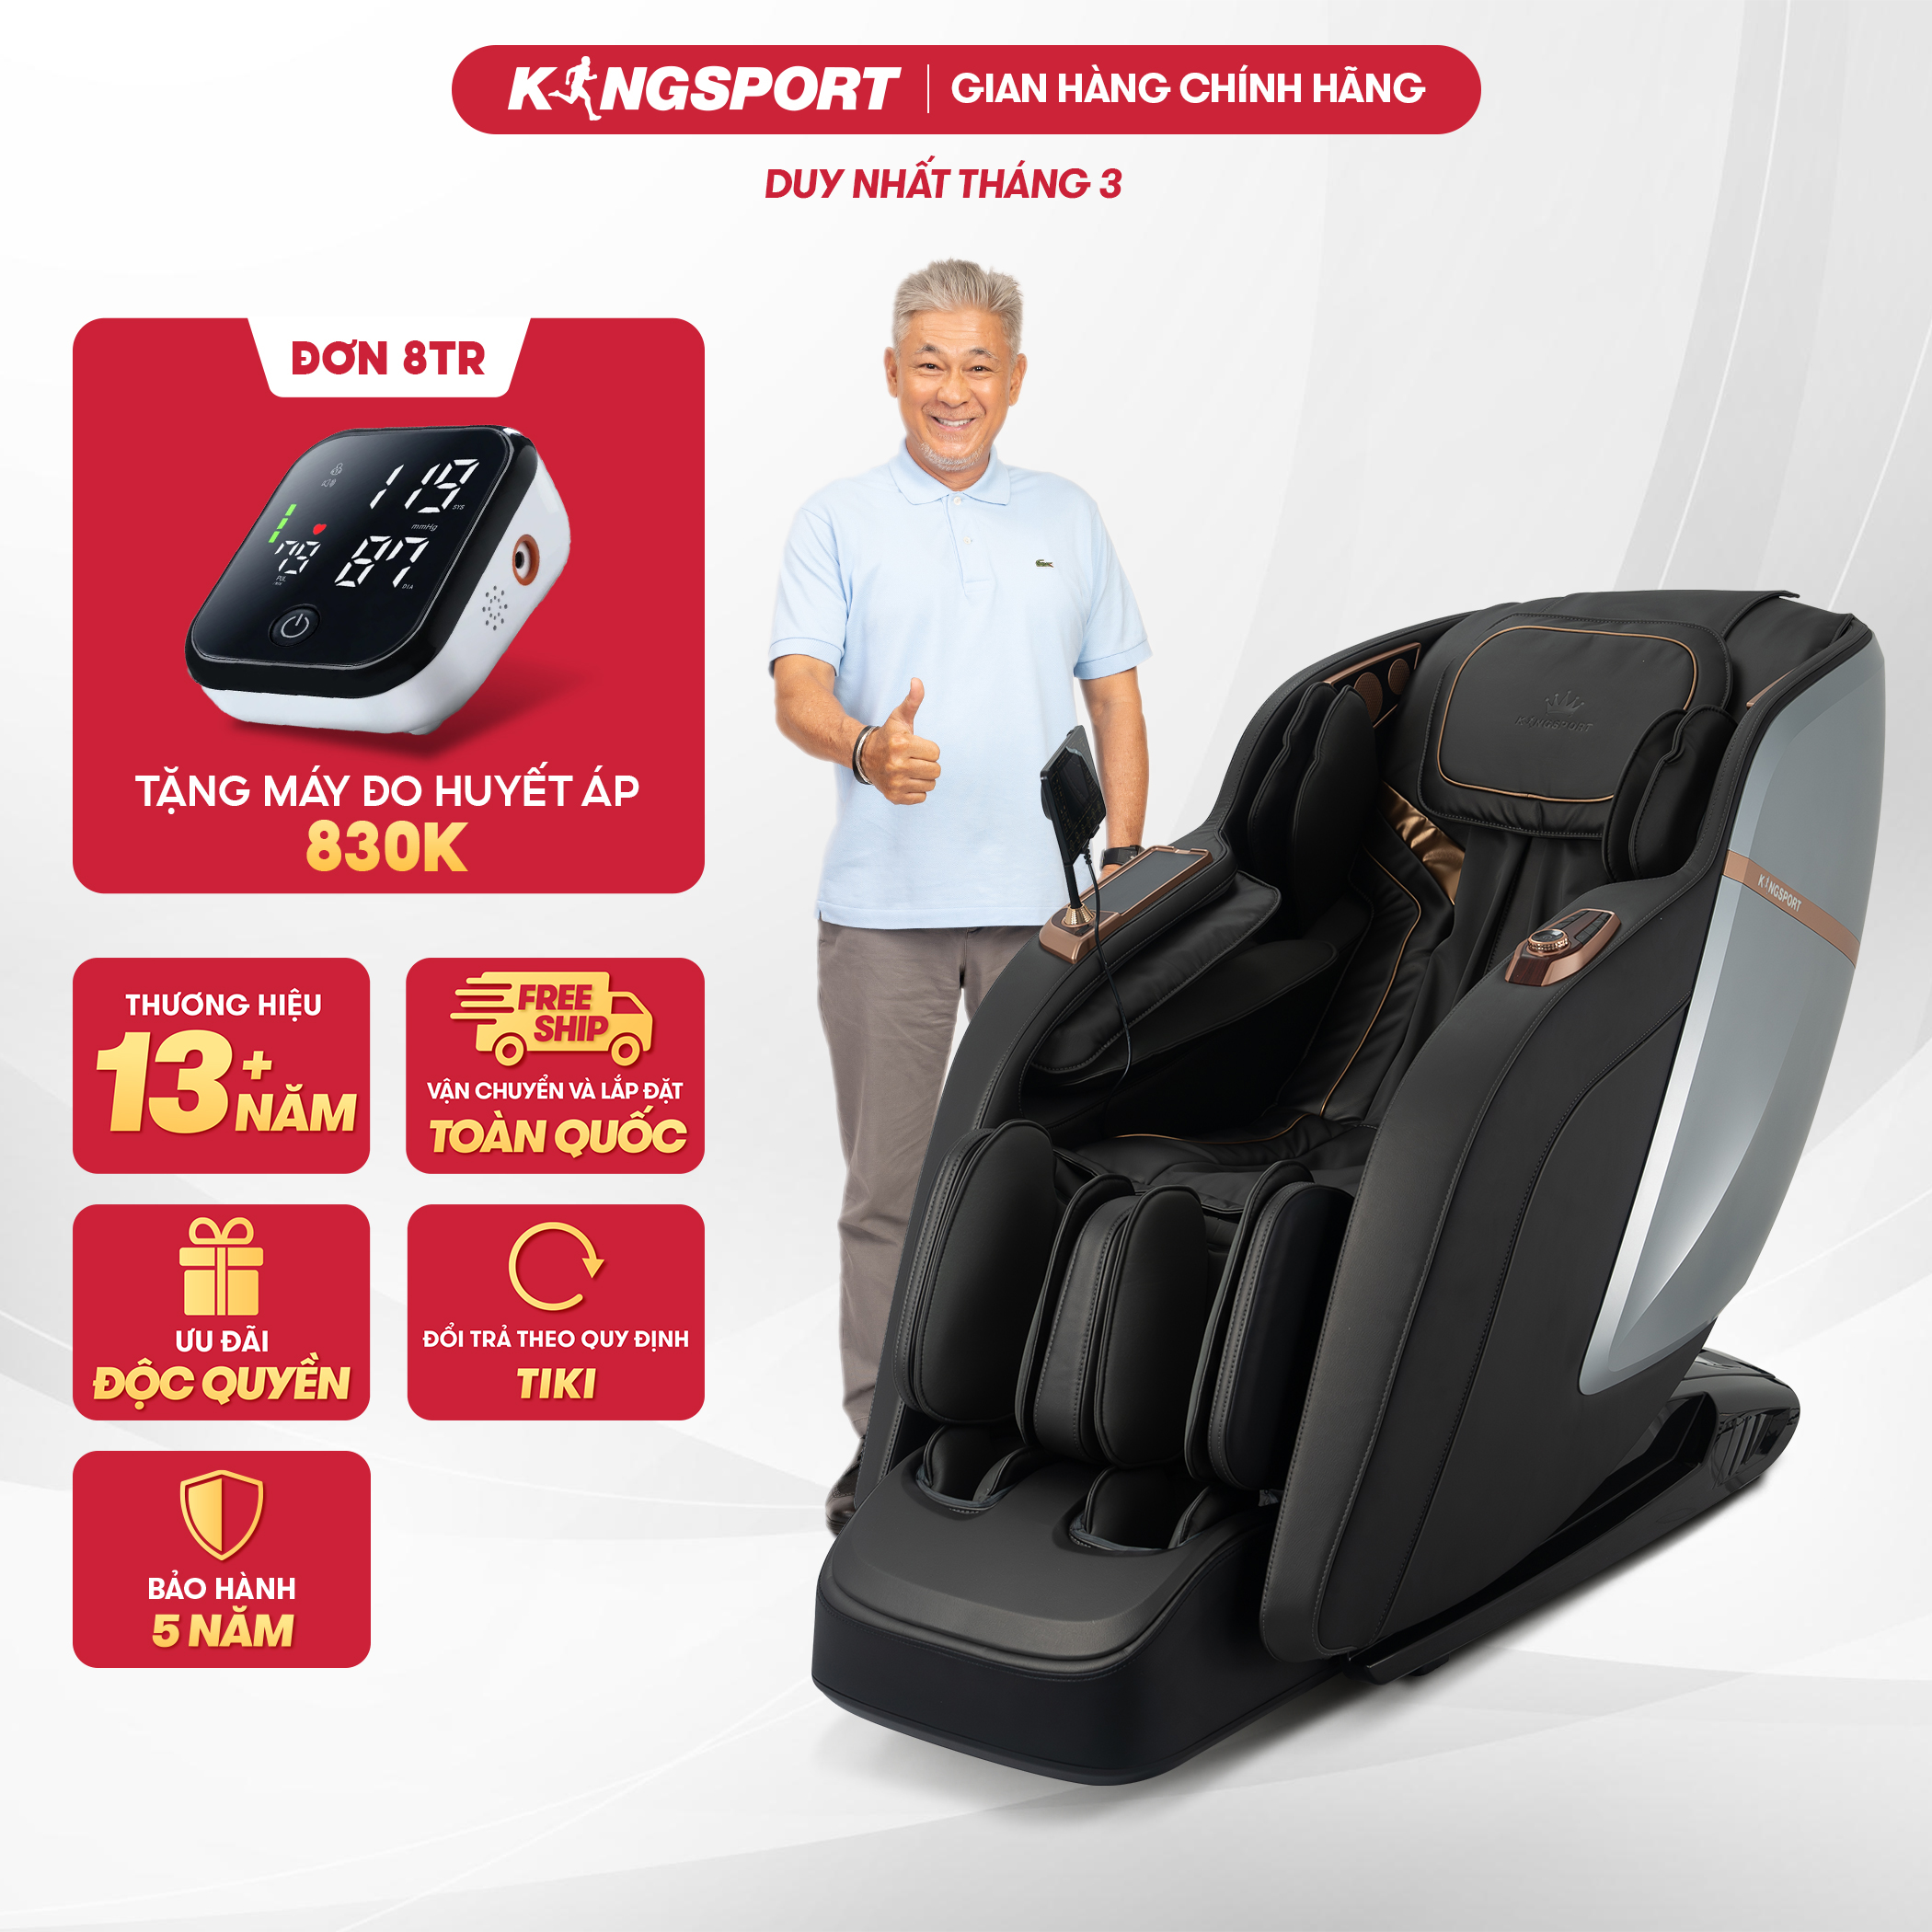 Ghế massage KINGSPORT G95 cao cấp, công nghệ massage 3D Ultra, công nghệ lọc khí Ion âm, massage từ tính lòng bàn tay